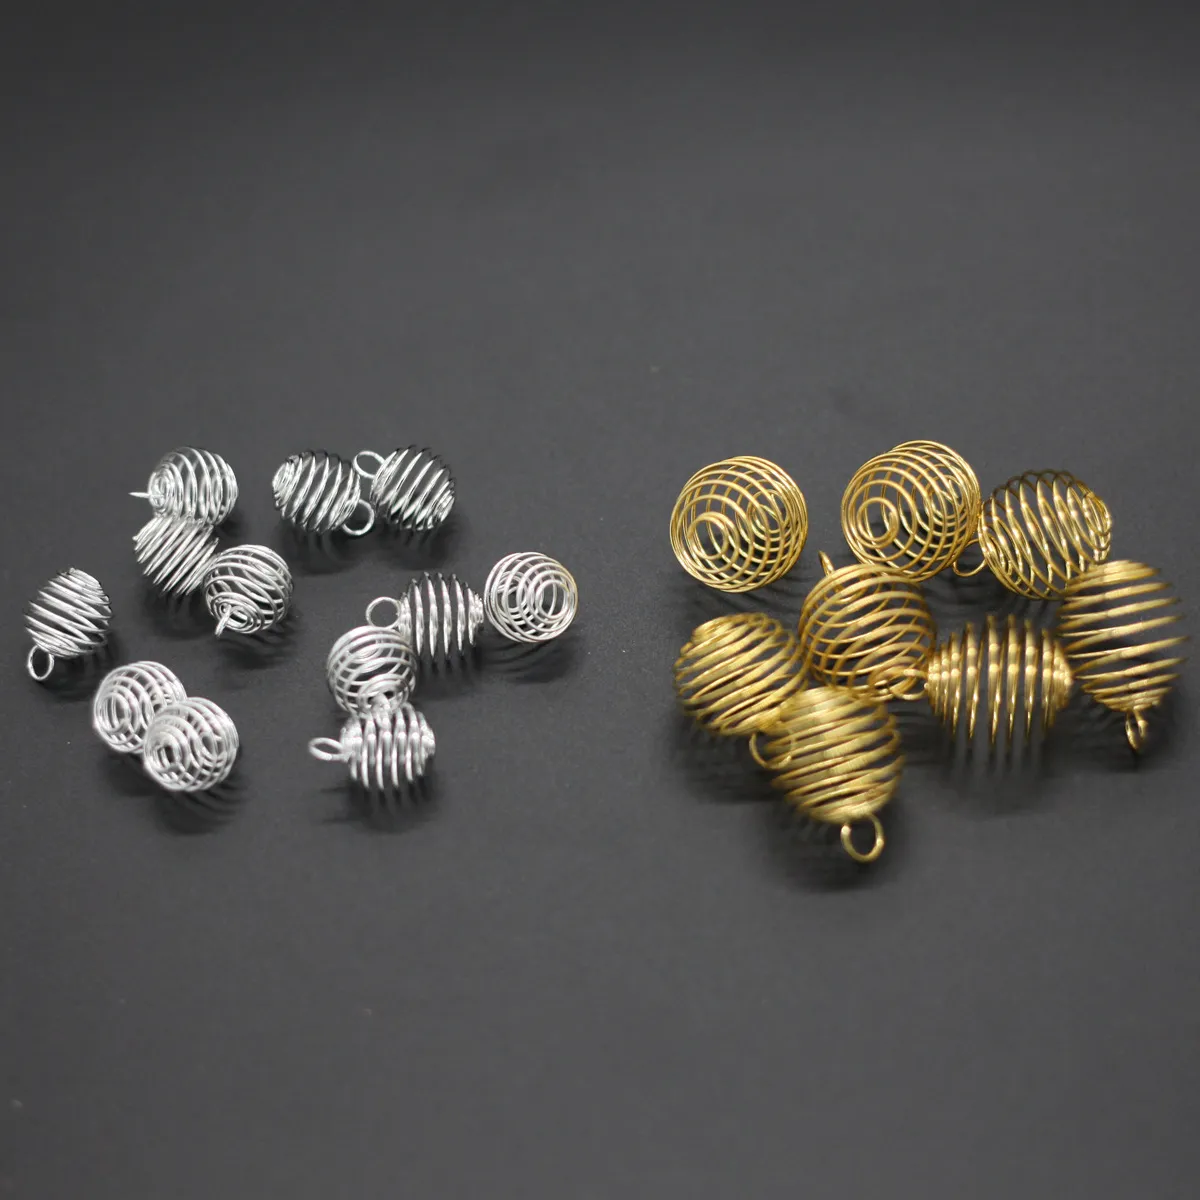 Cages de perles en spirale argentées Cages Charmnes Pendentifs Constatations 9x13mm Bijoux Fabrication DIY